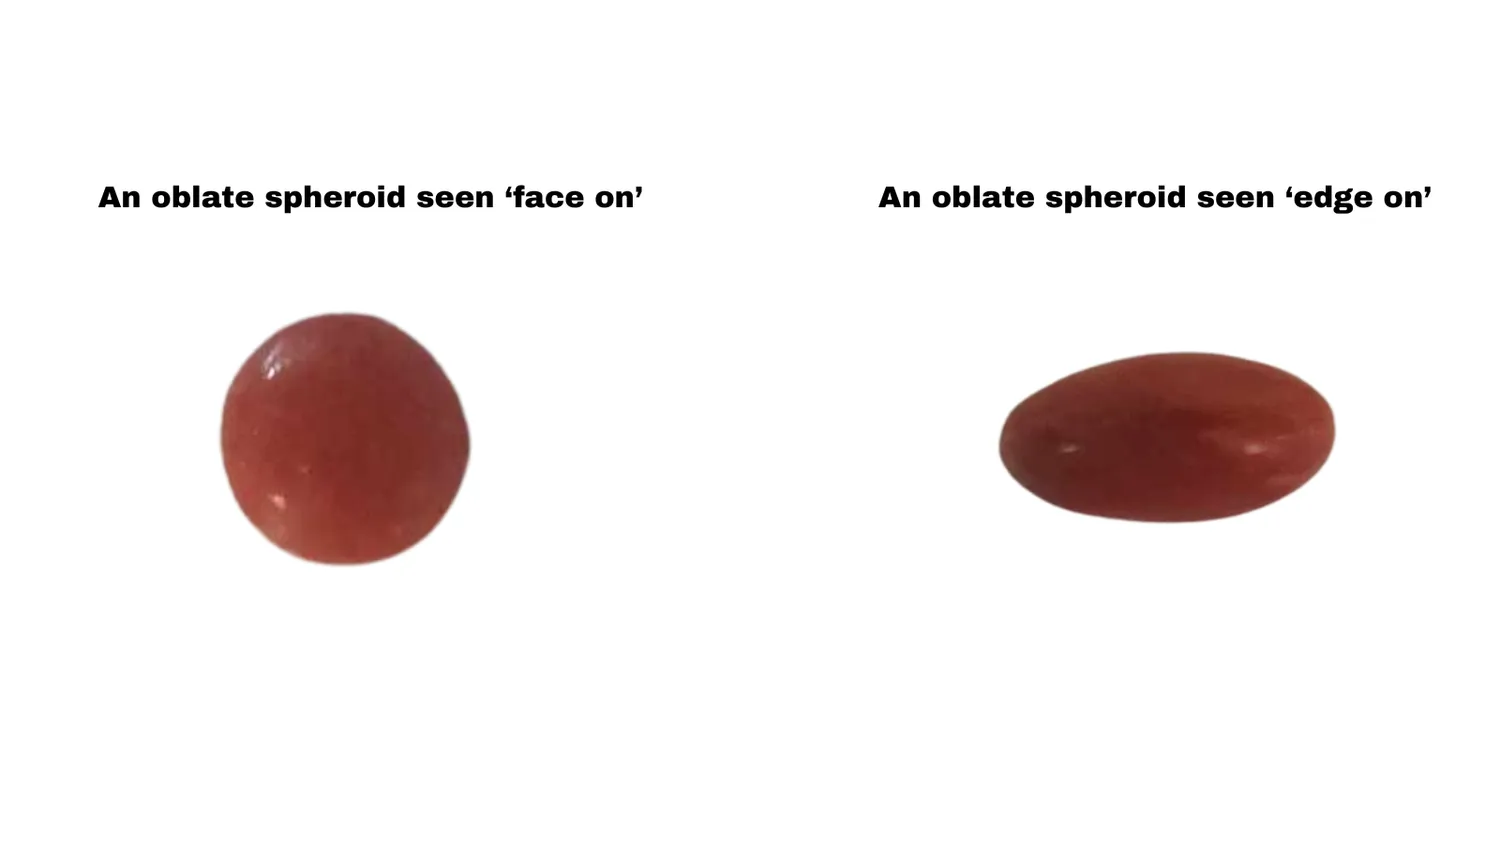 Oblate Sphäroide in Form von Smarties von vorne (links) und von der Seite (rechts) gesehen.